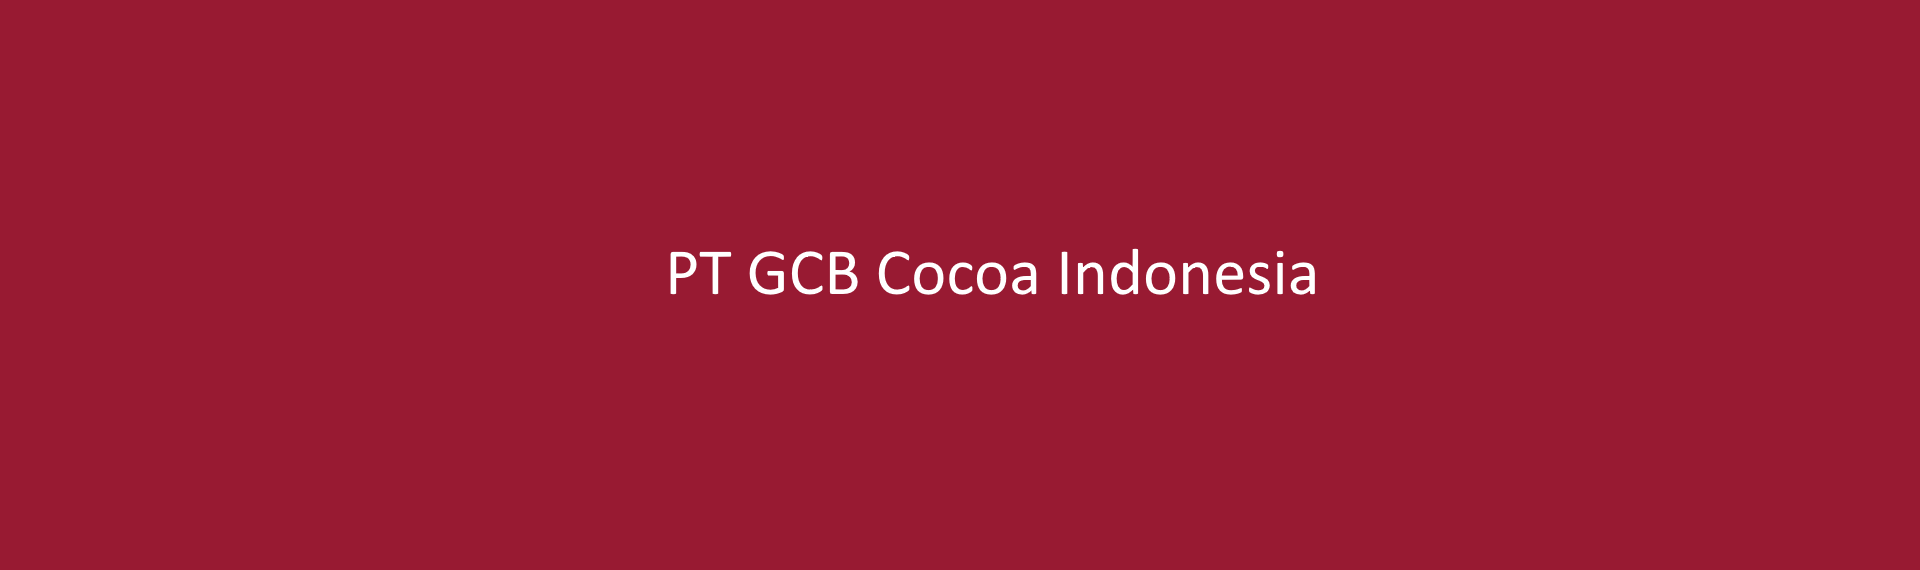 PT GCB Cocoa Indonesia